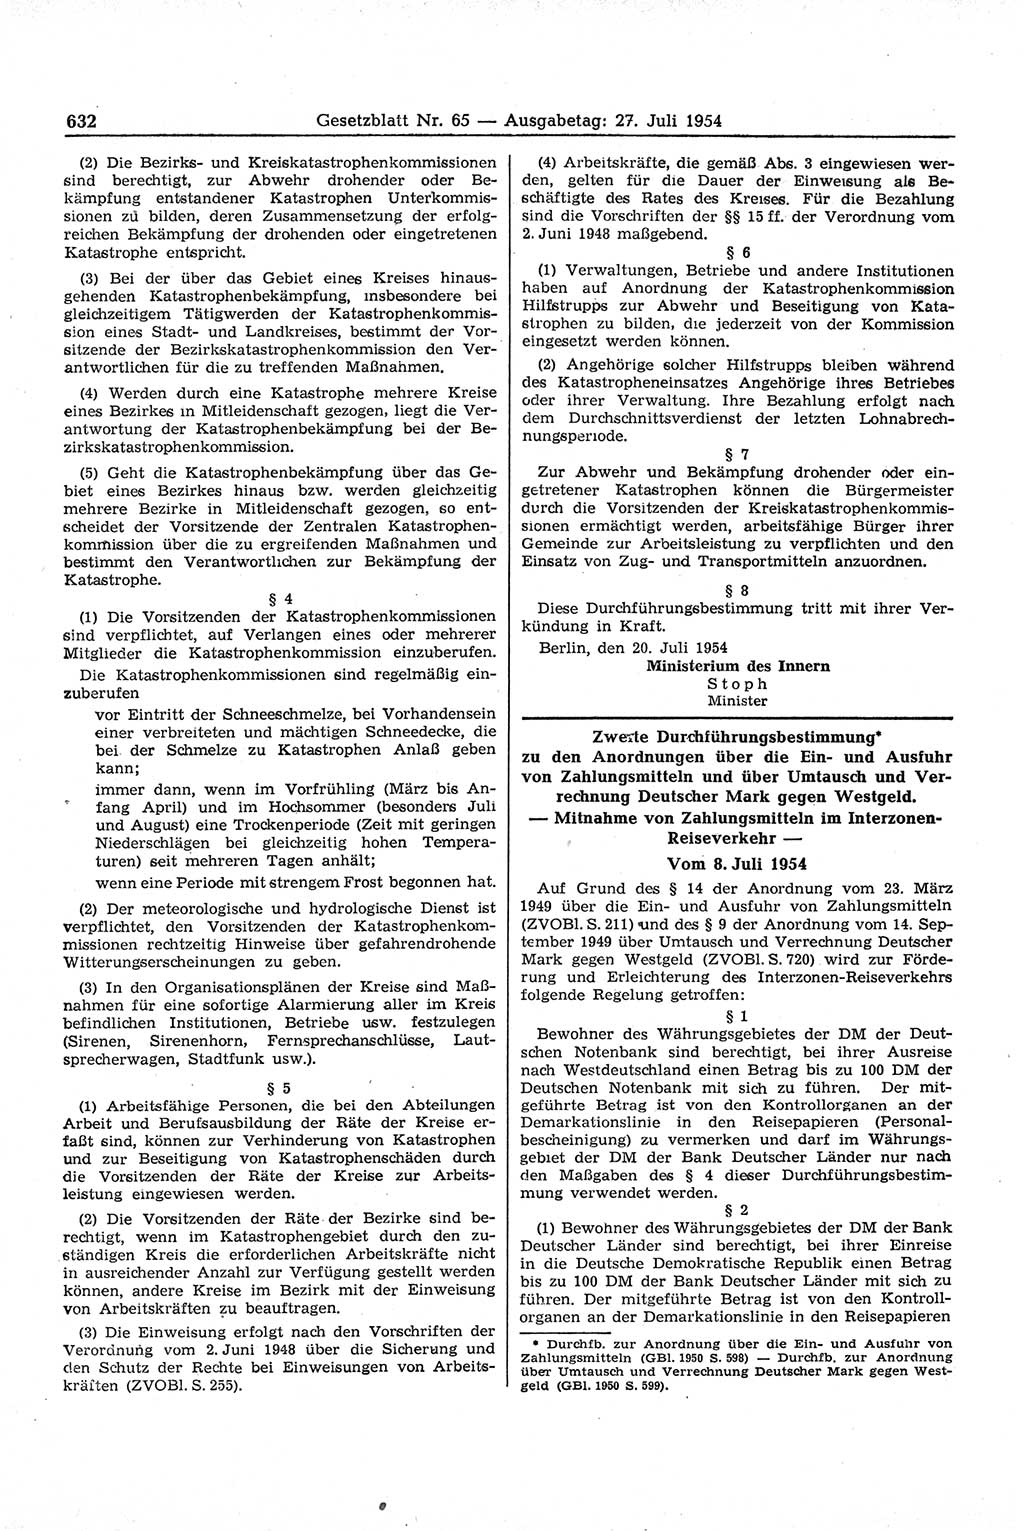 Gesetzblatt (GBl.) der Deutschen Demokratischen Republik (DDR) 1954, Seite 632 (GBl. DDR 1954, S. 632)